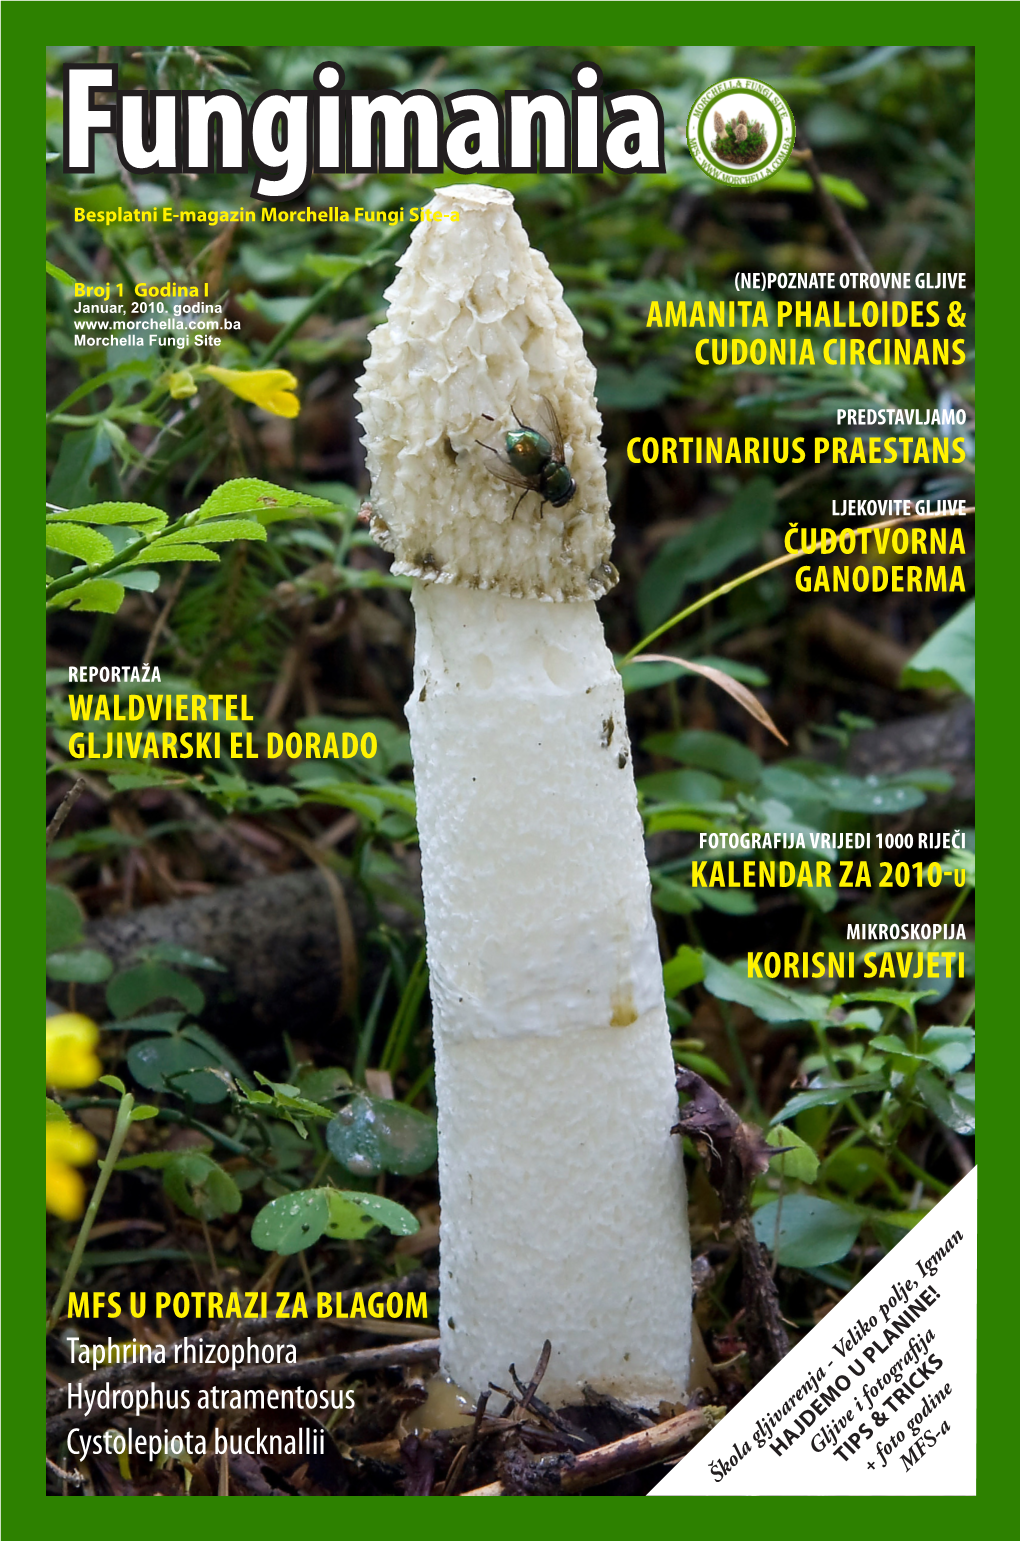 Fungimania Besplatni E-Magazin Morchella Fungi Site-A